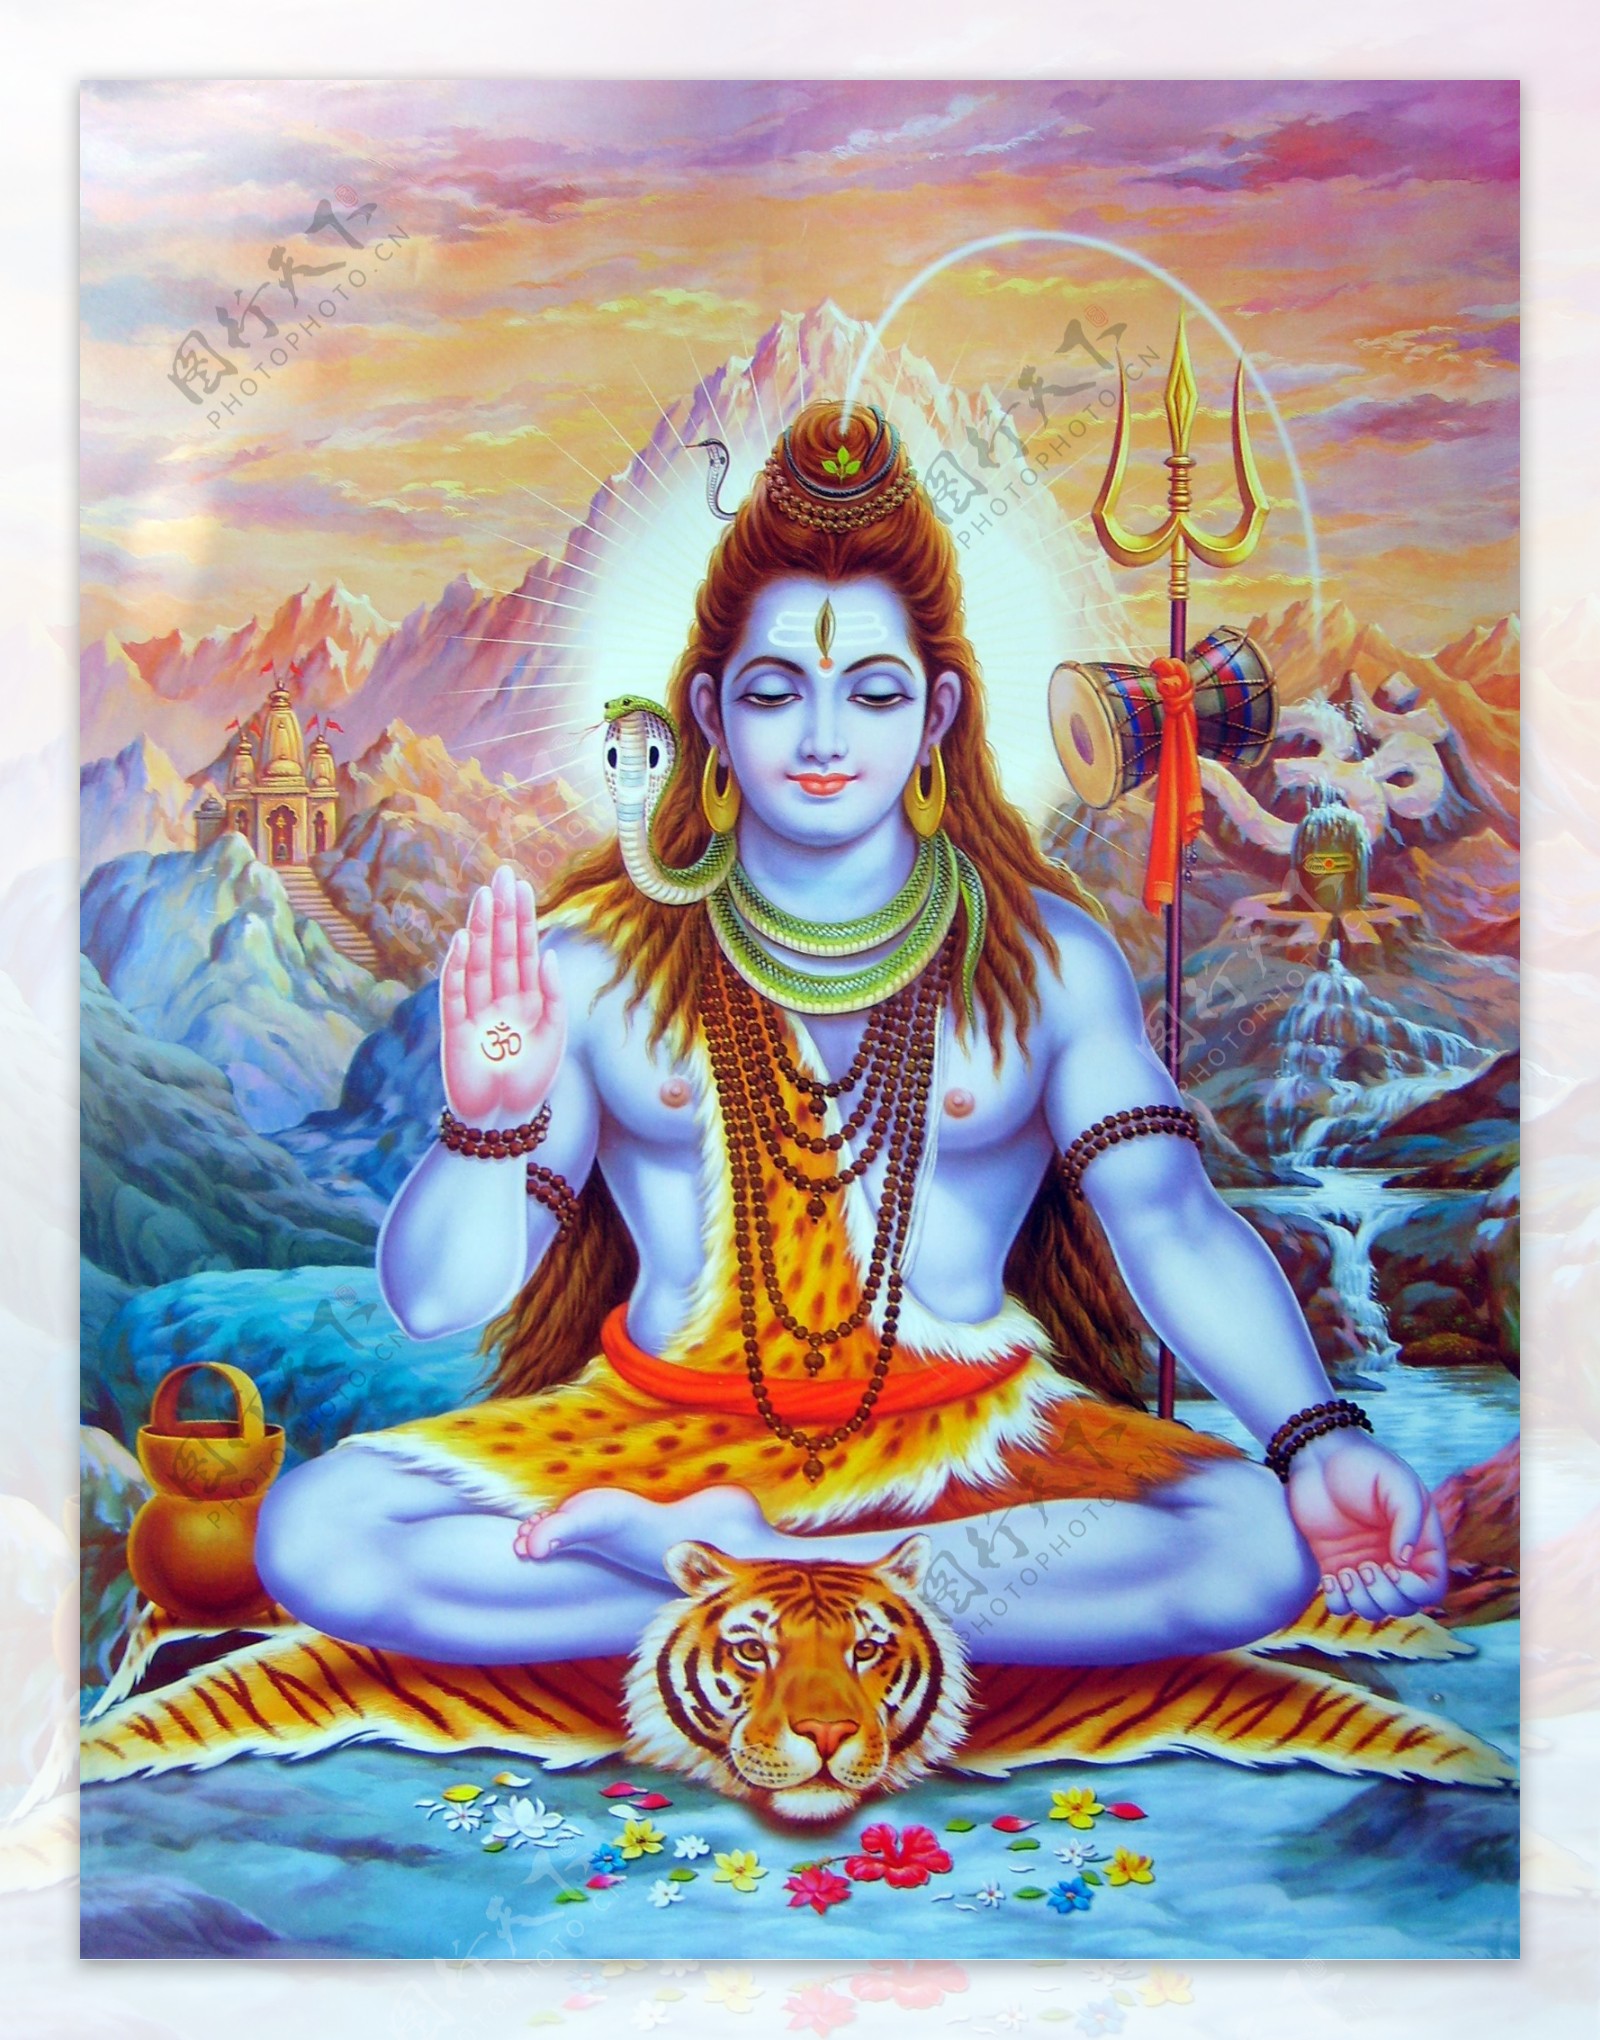 印度教湿婆神像图片